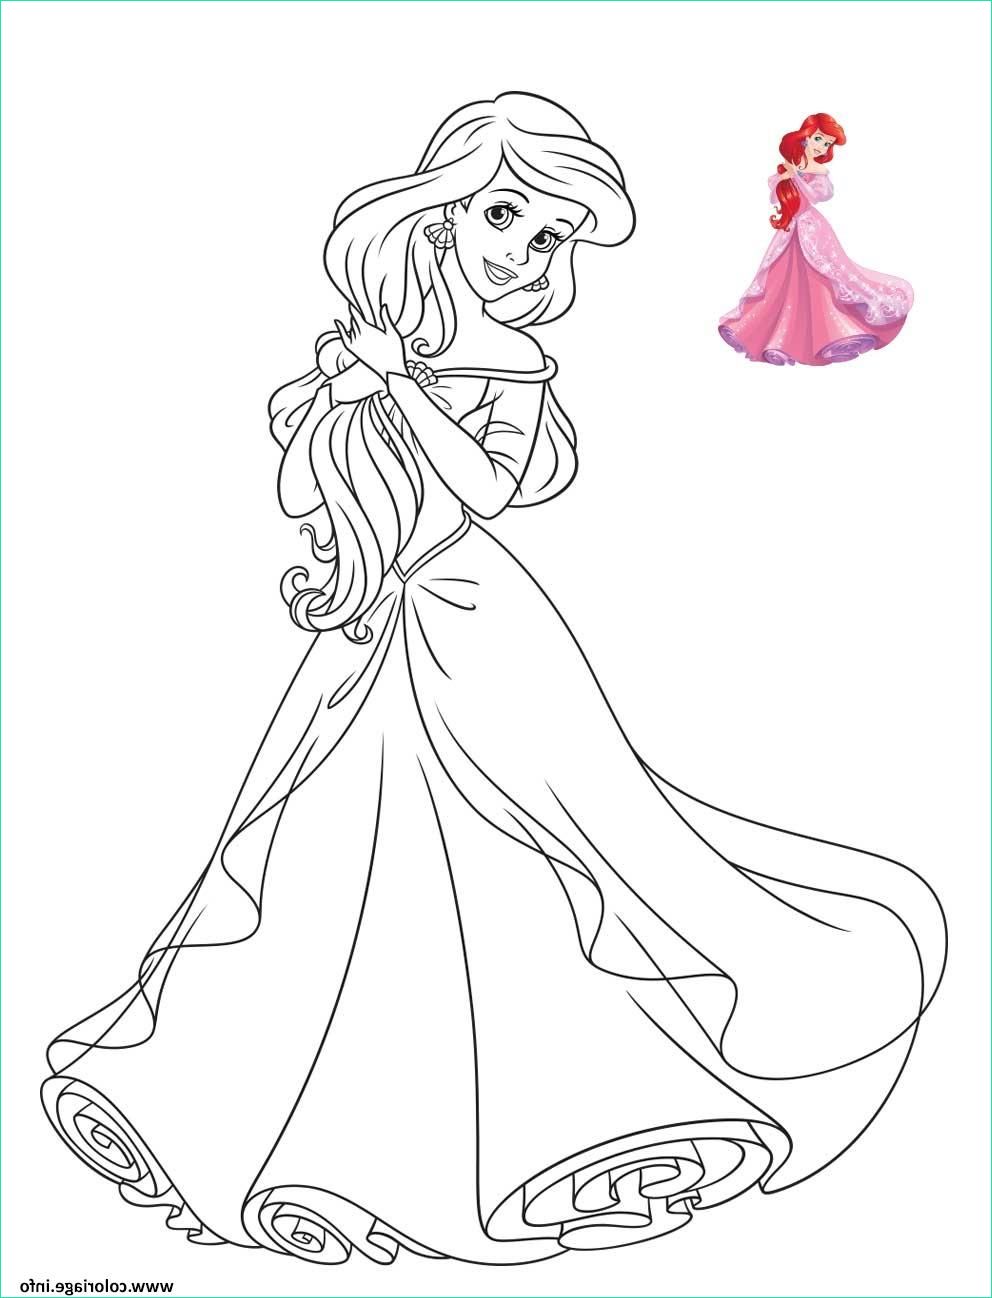 Dessin A Imprimer Princesse Unique Photographie Coloriage Princesse Disney Ariel Jecolorie